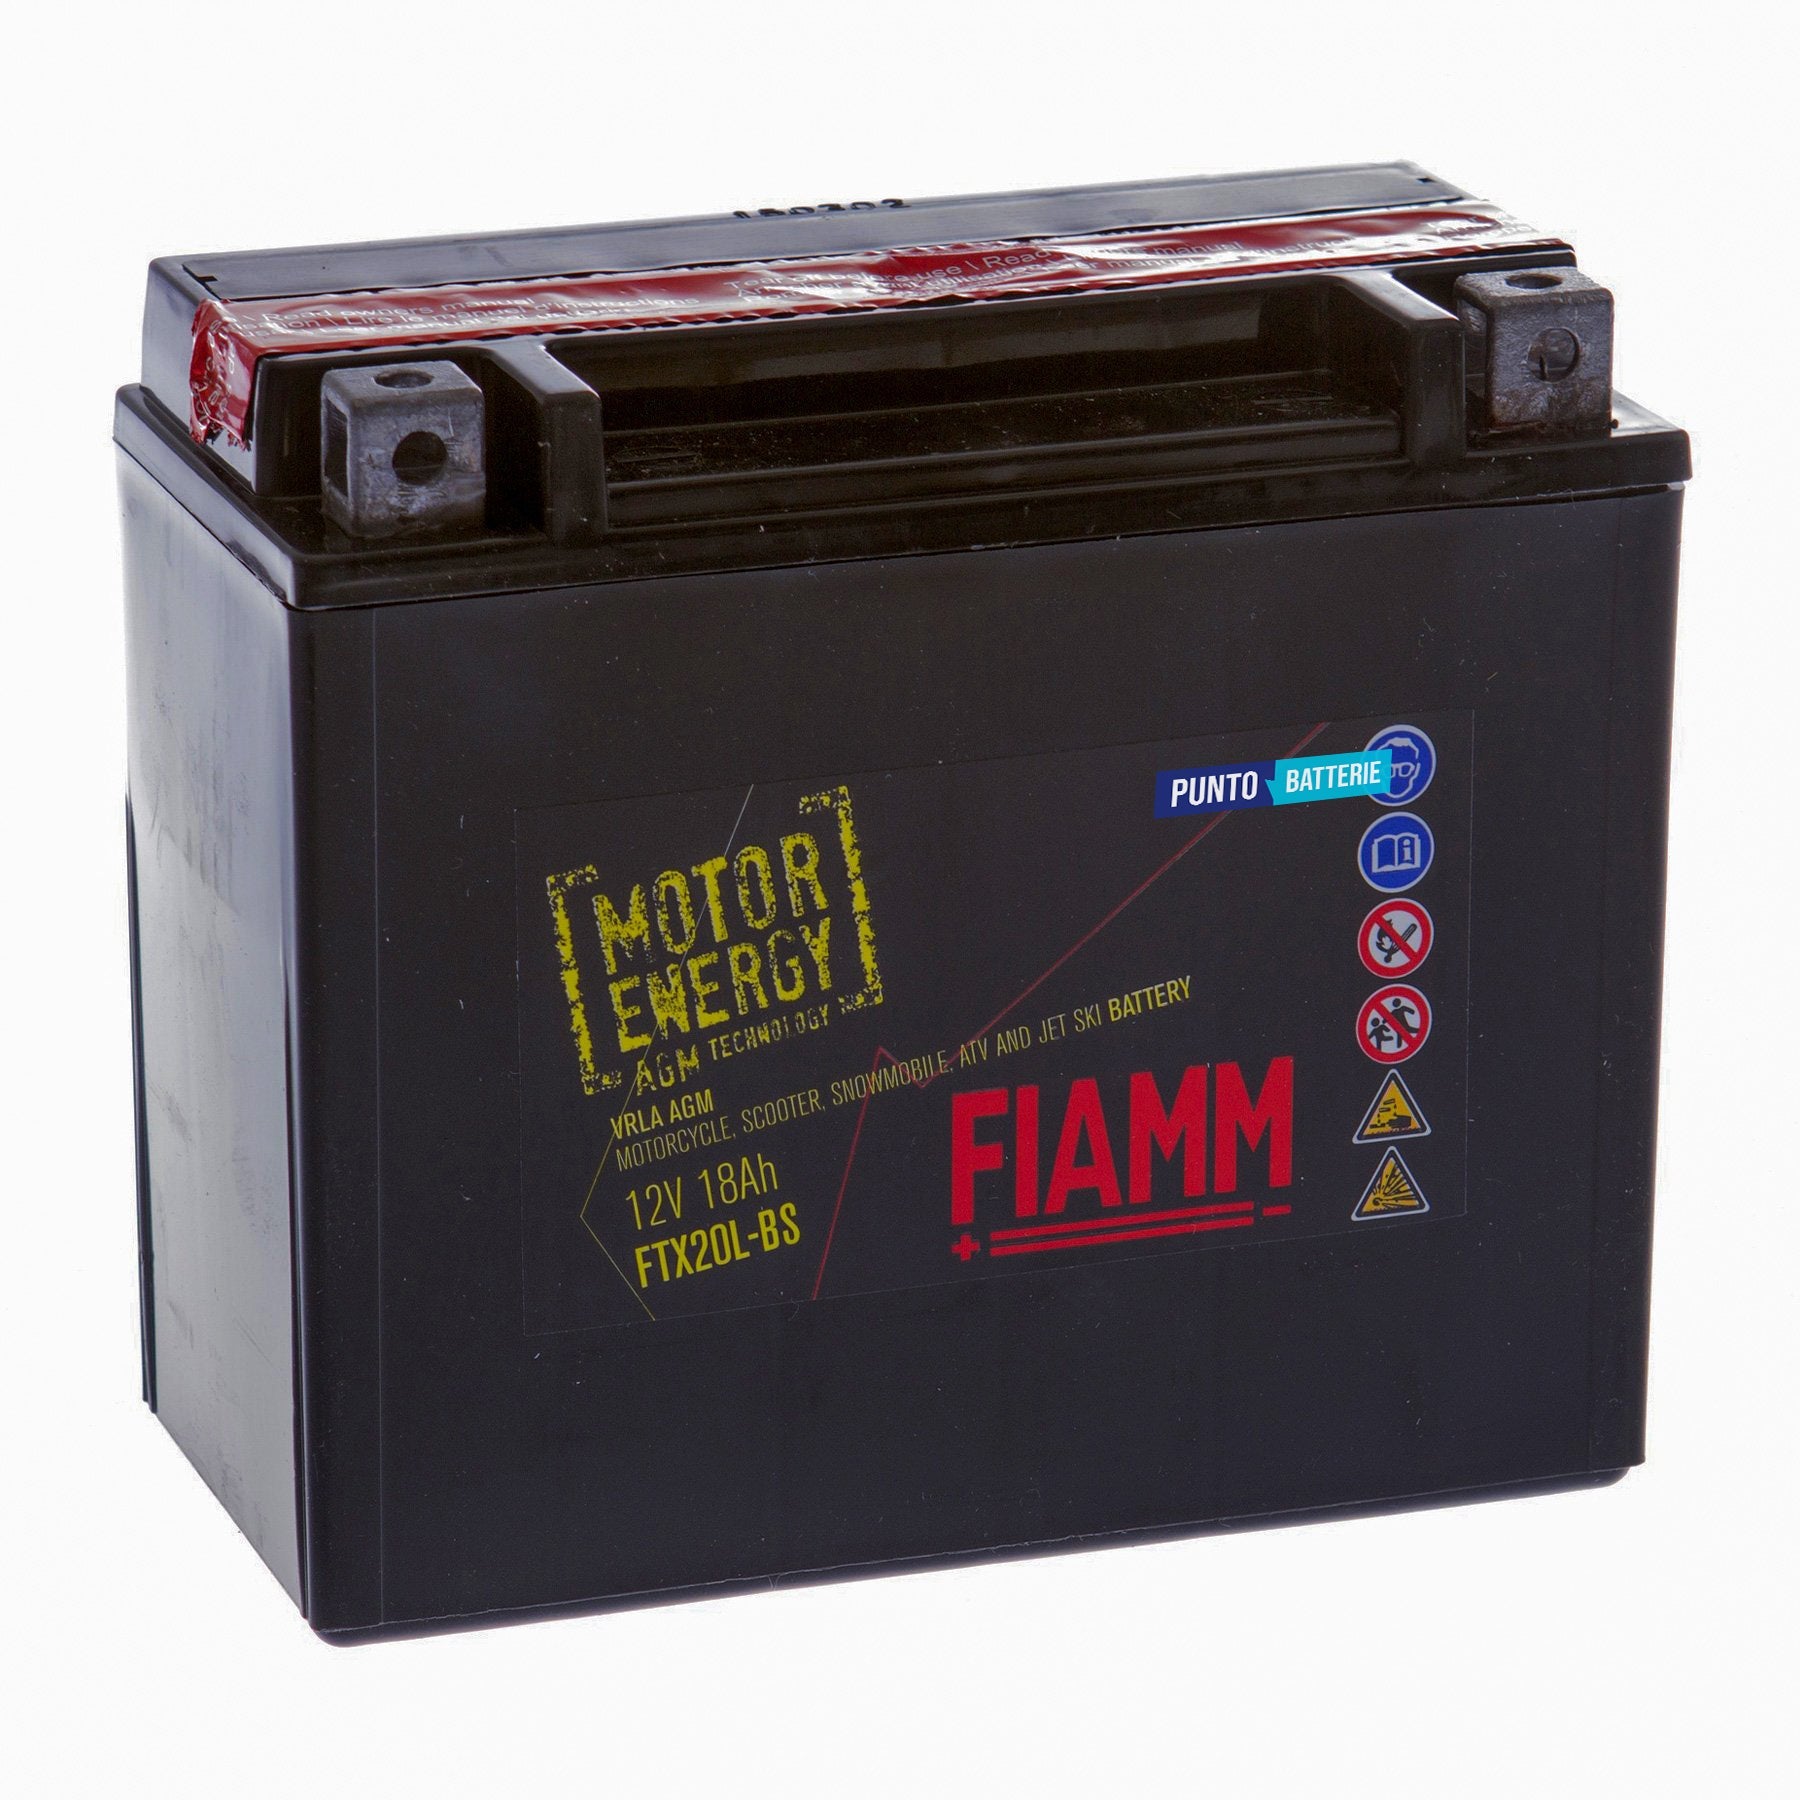 Batteria originale Fiamm Motor Energy AGM FTX20L-BS, dimensioni 175 x 87 x 155, polo positivo a destra, 12 volt, 18 amperora, 250 ampere. Batteria per moto, scooter e powersport.